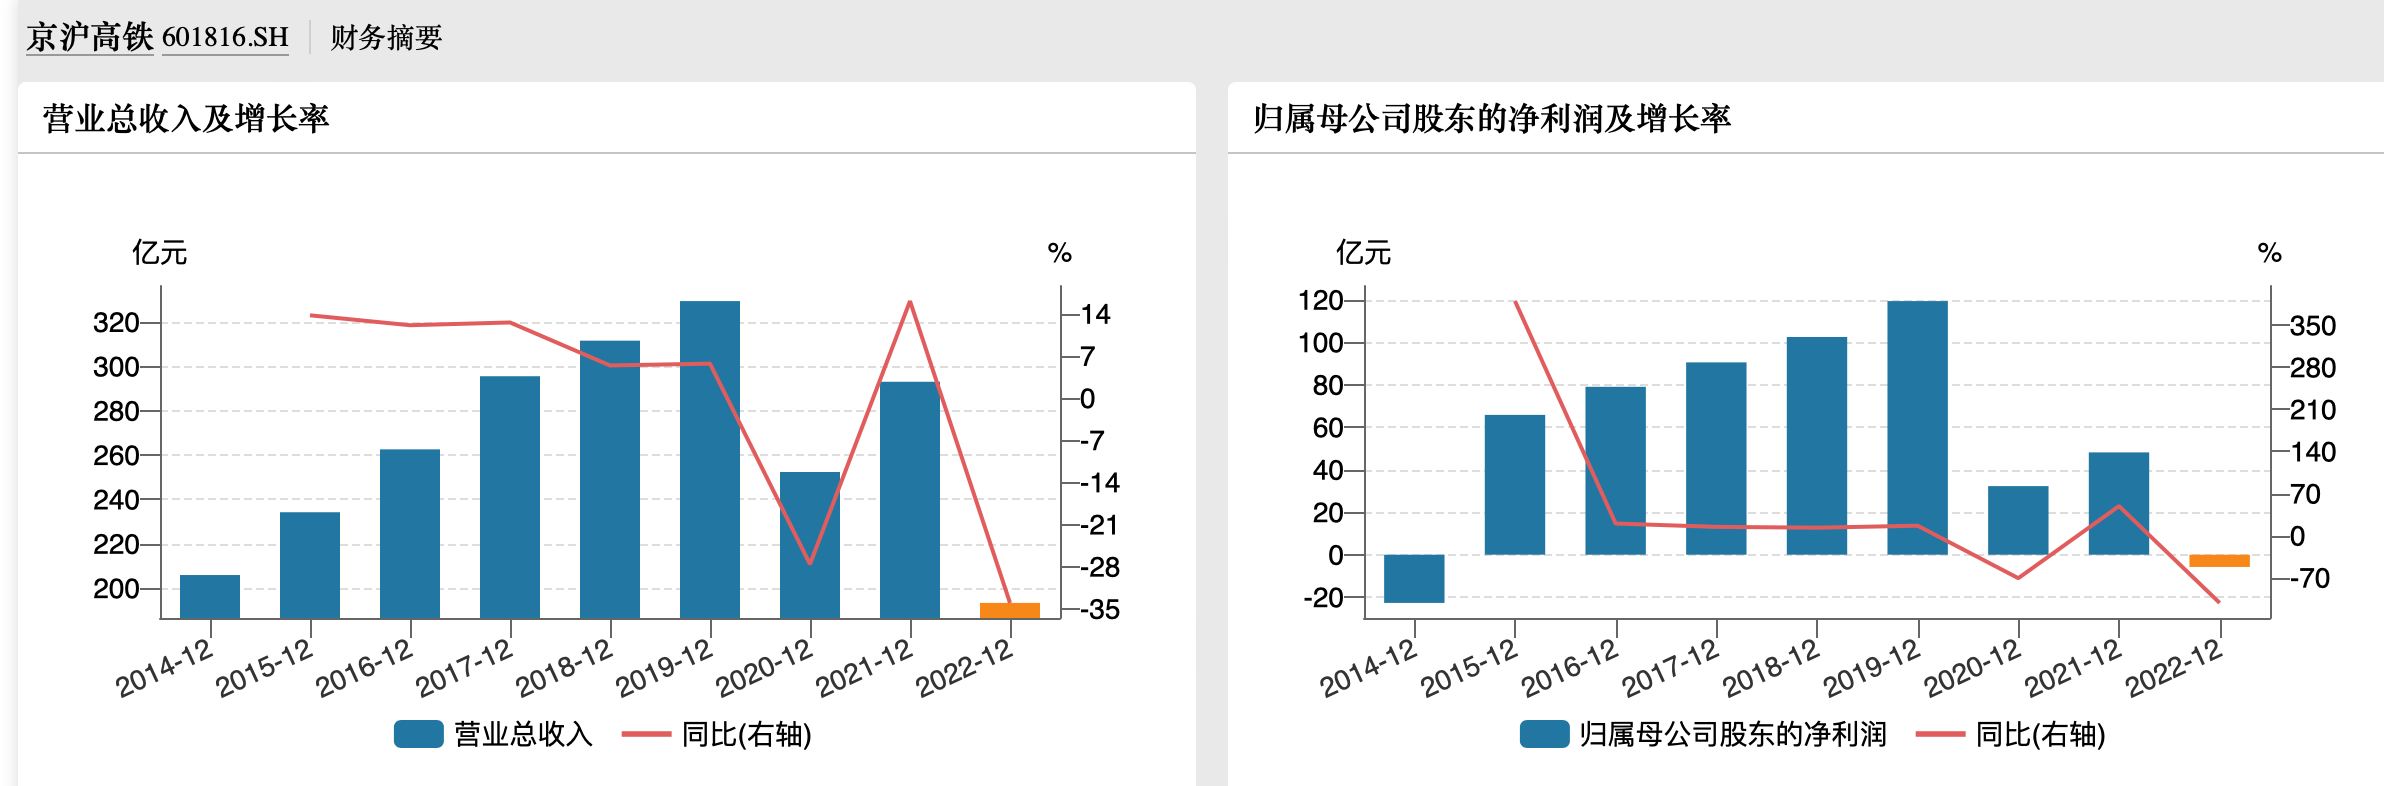 京沪高铁去年亏损近6亿 今年一季度净利暴增9倍恢复至疫情前水平